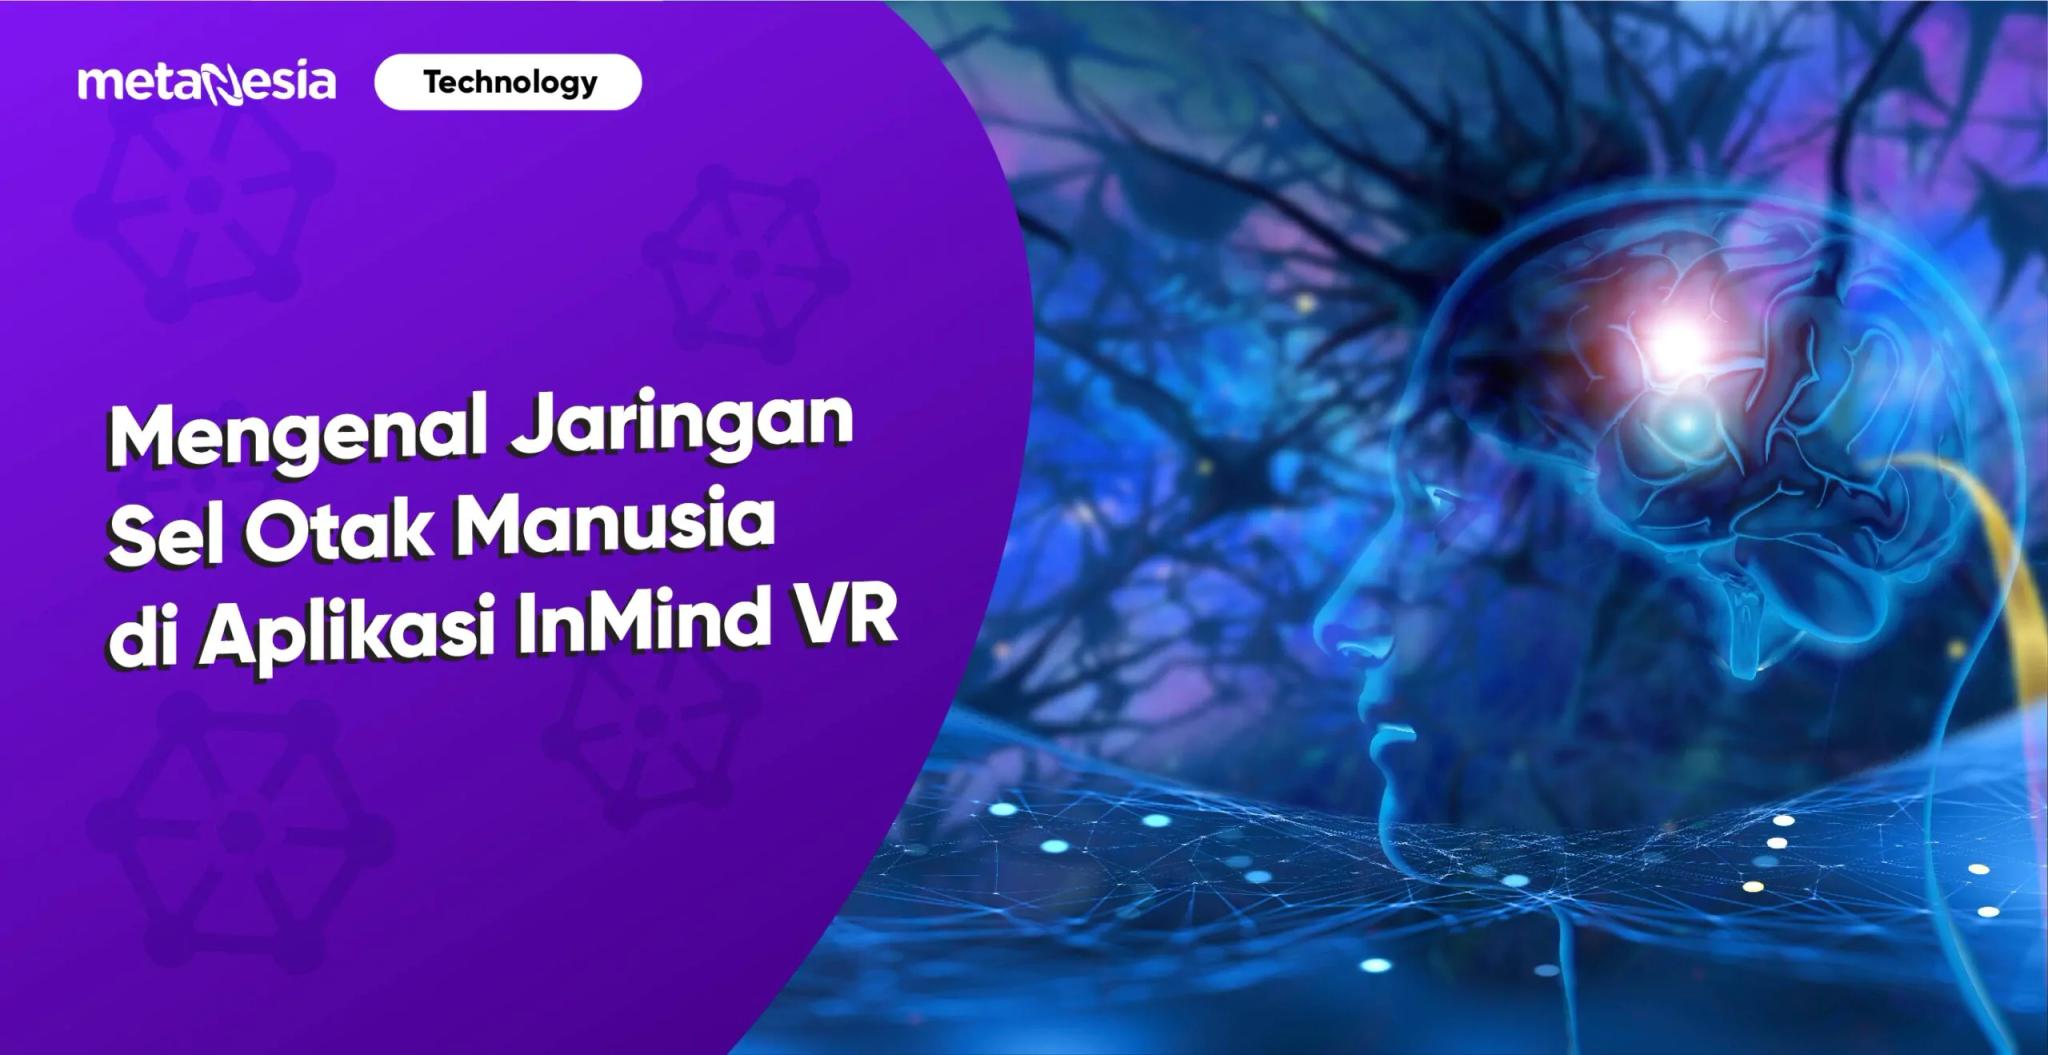 Aplikasi InMind VR, Hadirkan Pengalaman Belajar Imersif Jaringan Sel Otak Manusia 